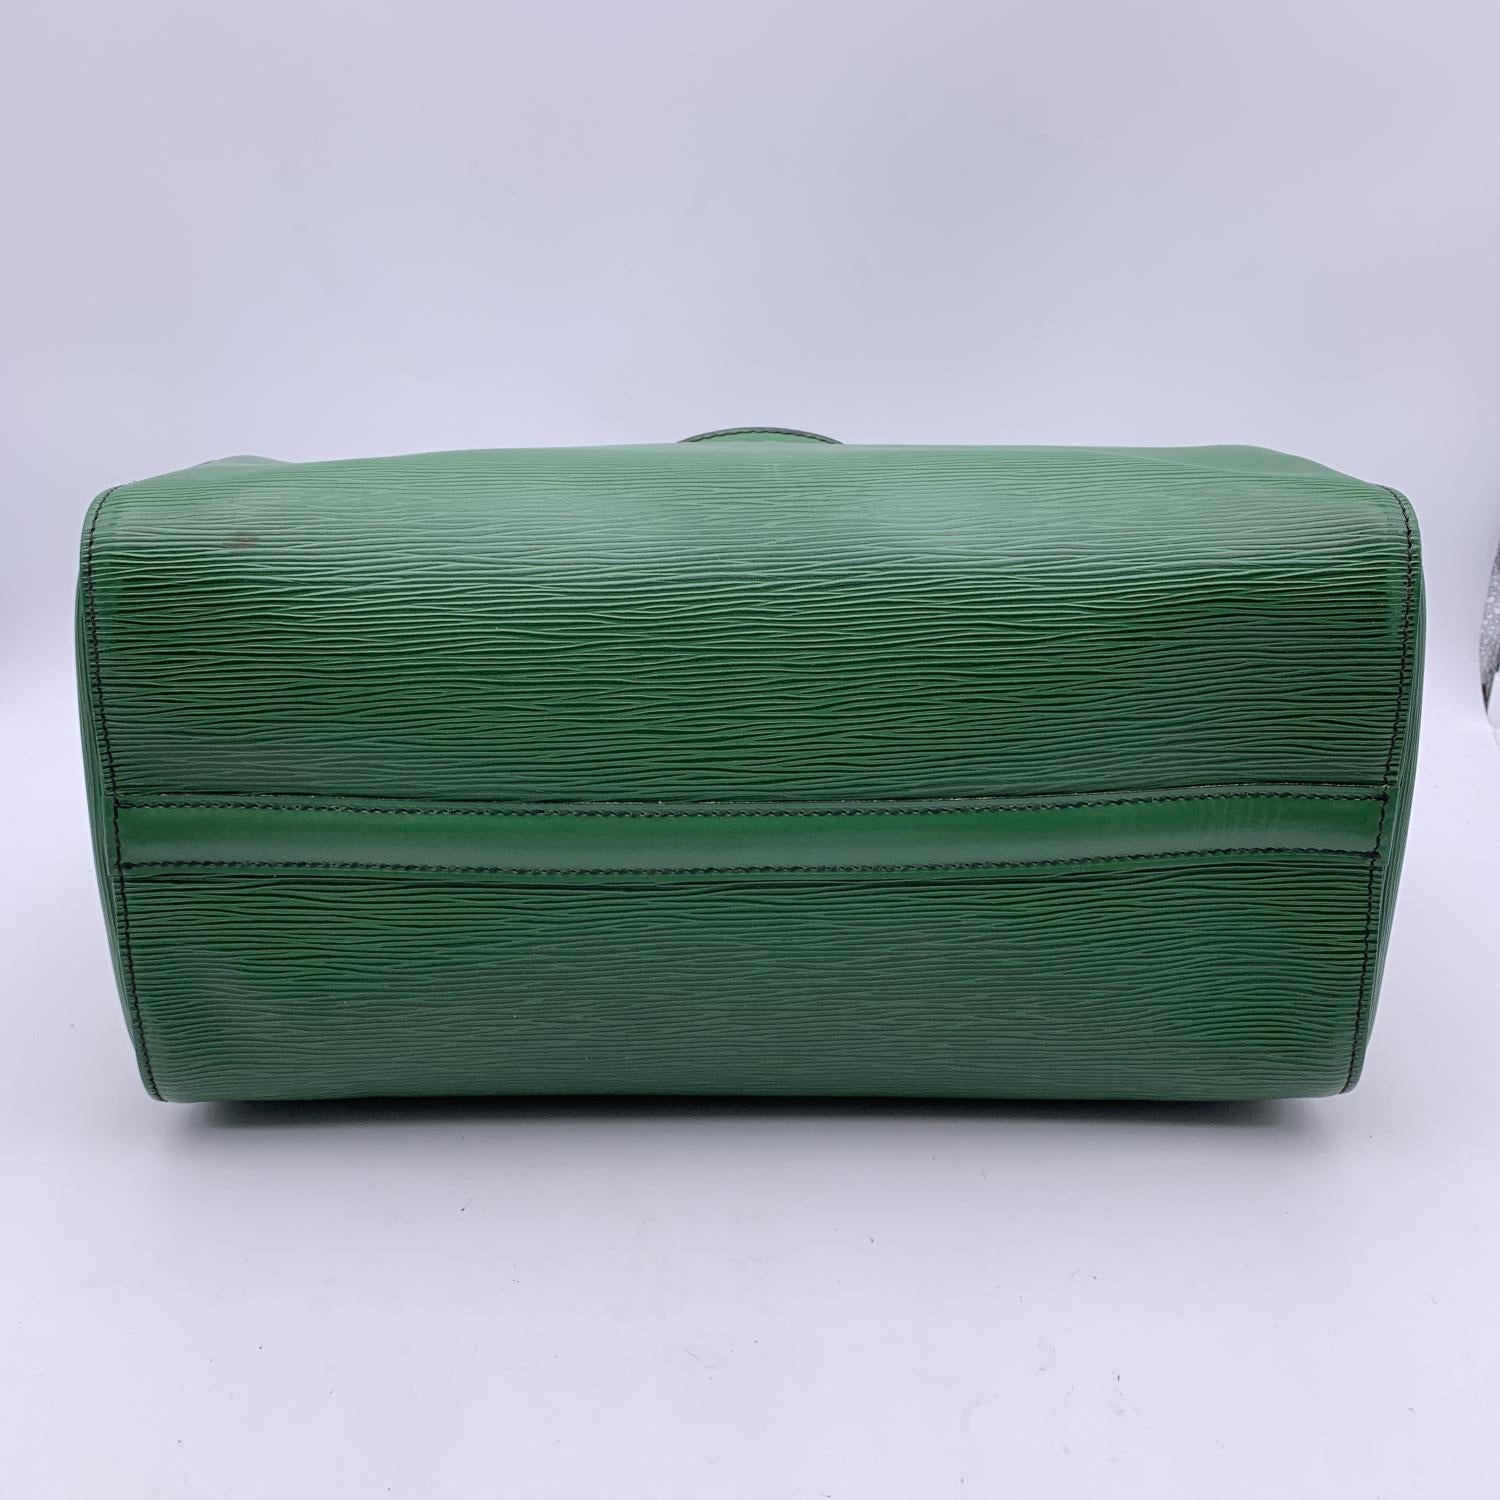 Louis Vuitton Vintage Green Epi Leather Speedy 35 Boston Bag Handbag 2